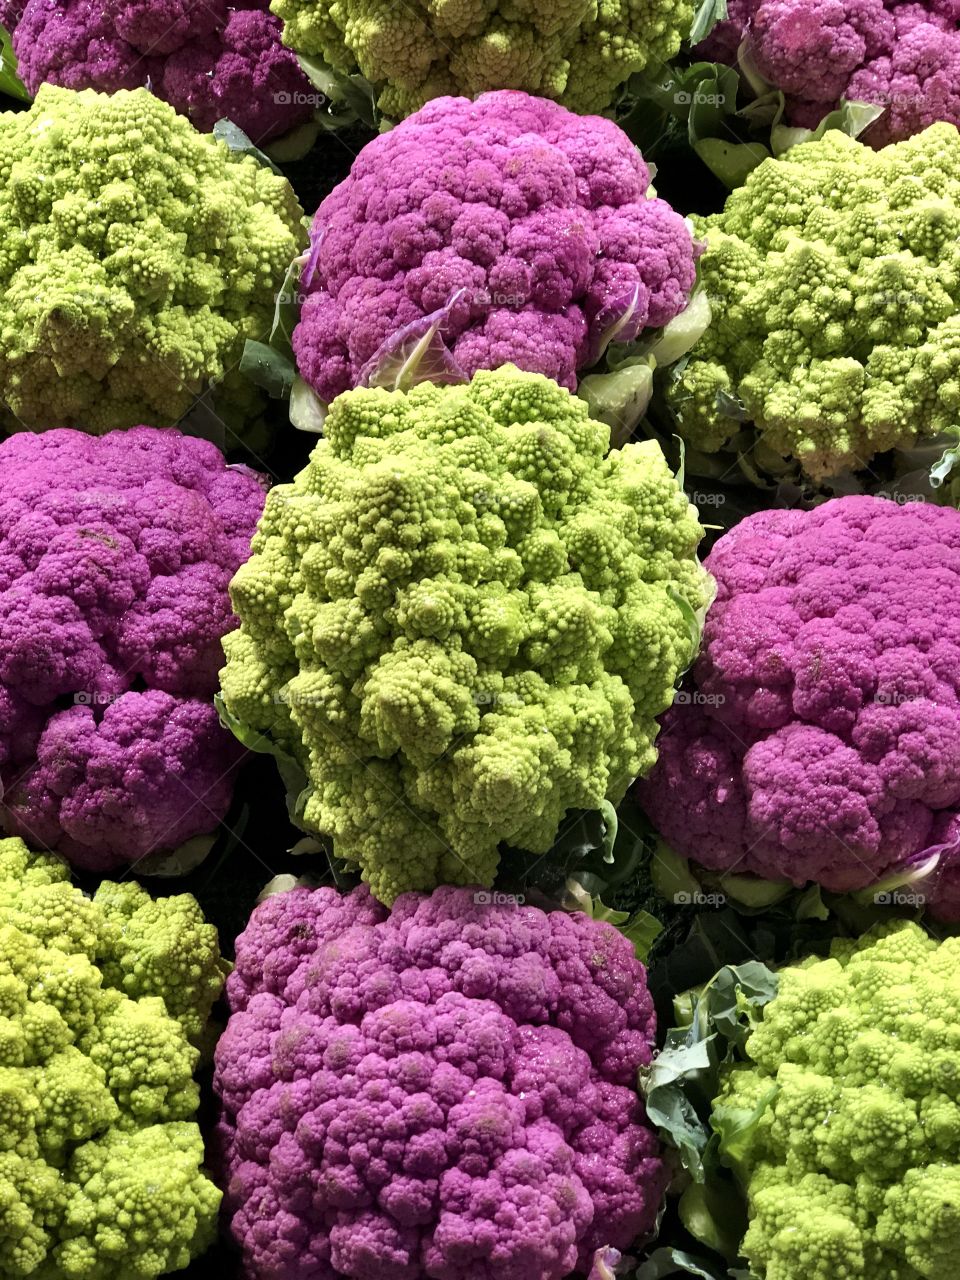 Purple cauliflower and Romanesco